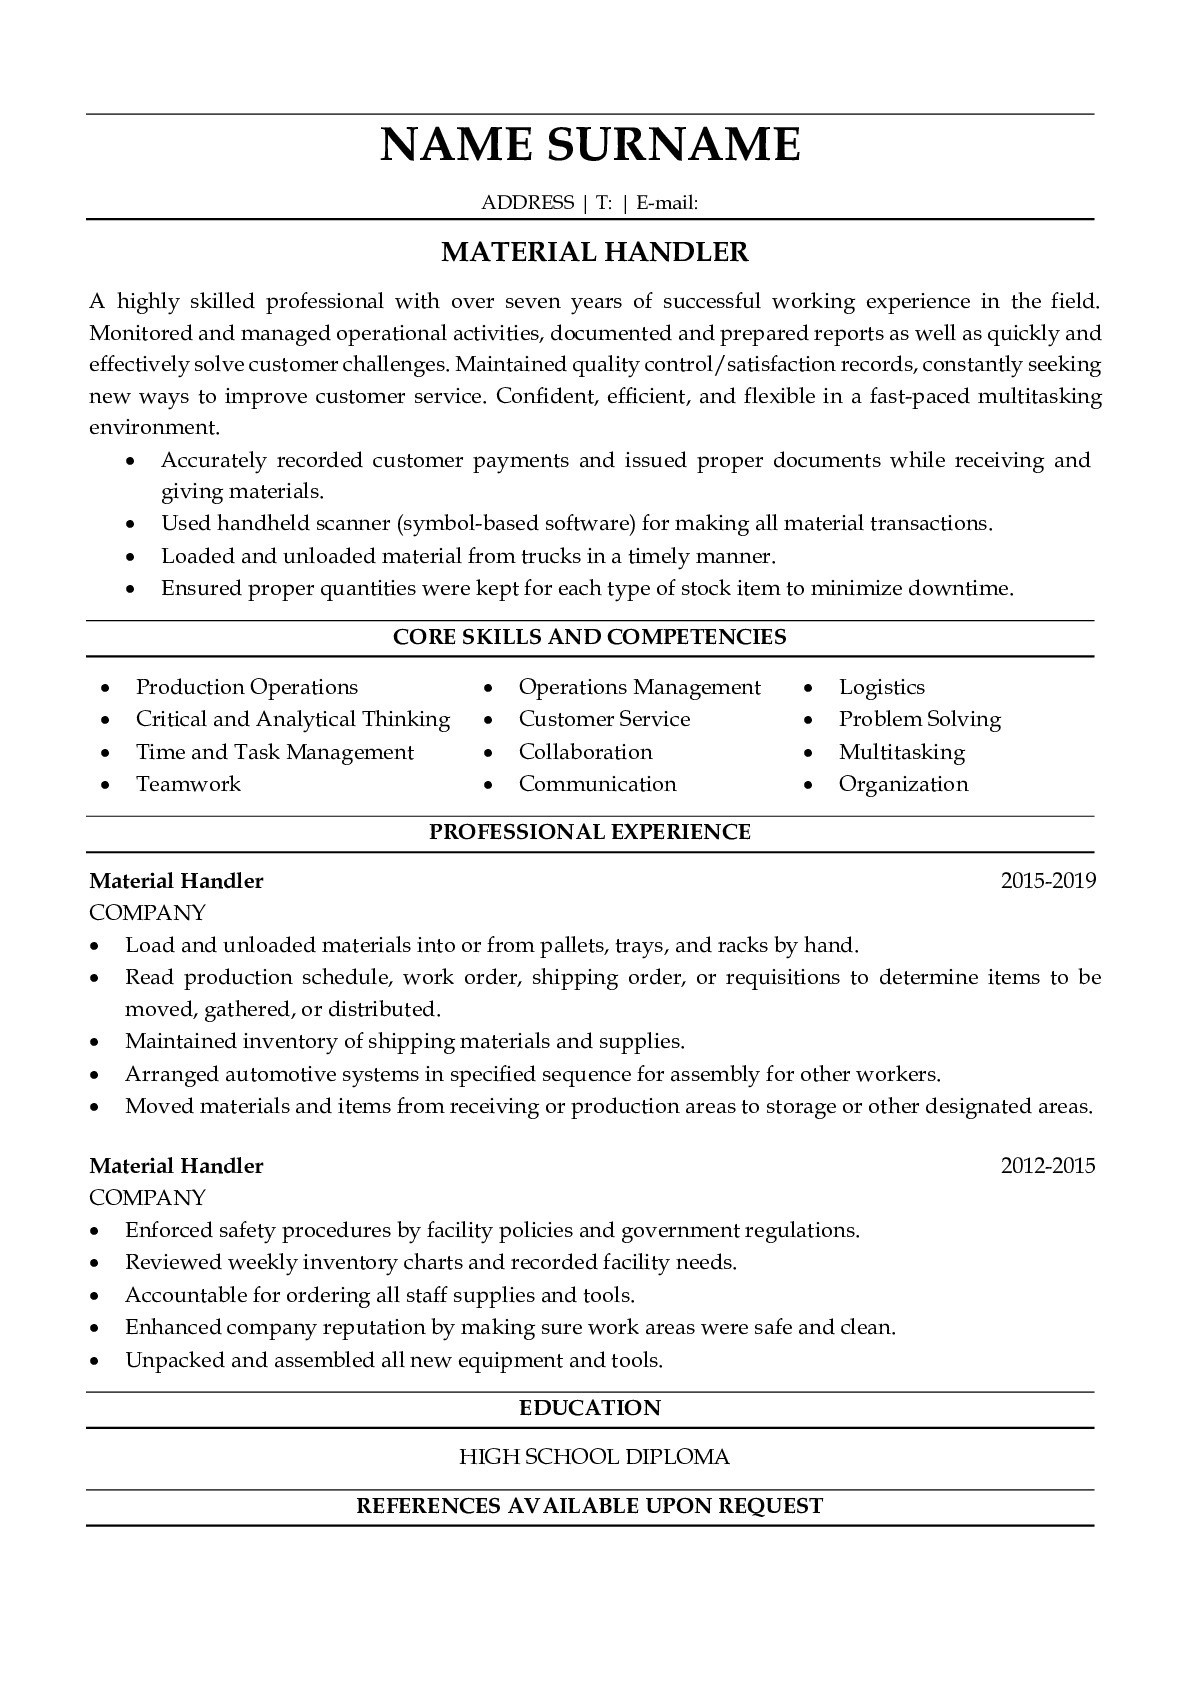 Sample Material Handler Resume Job Description Material Handler Resume with Job Description Sample Resumegets